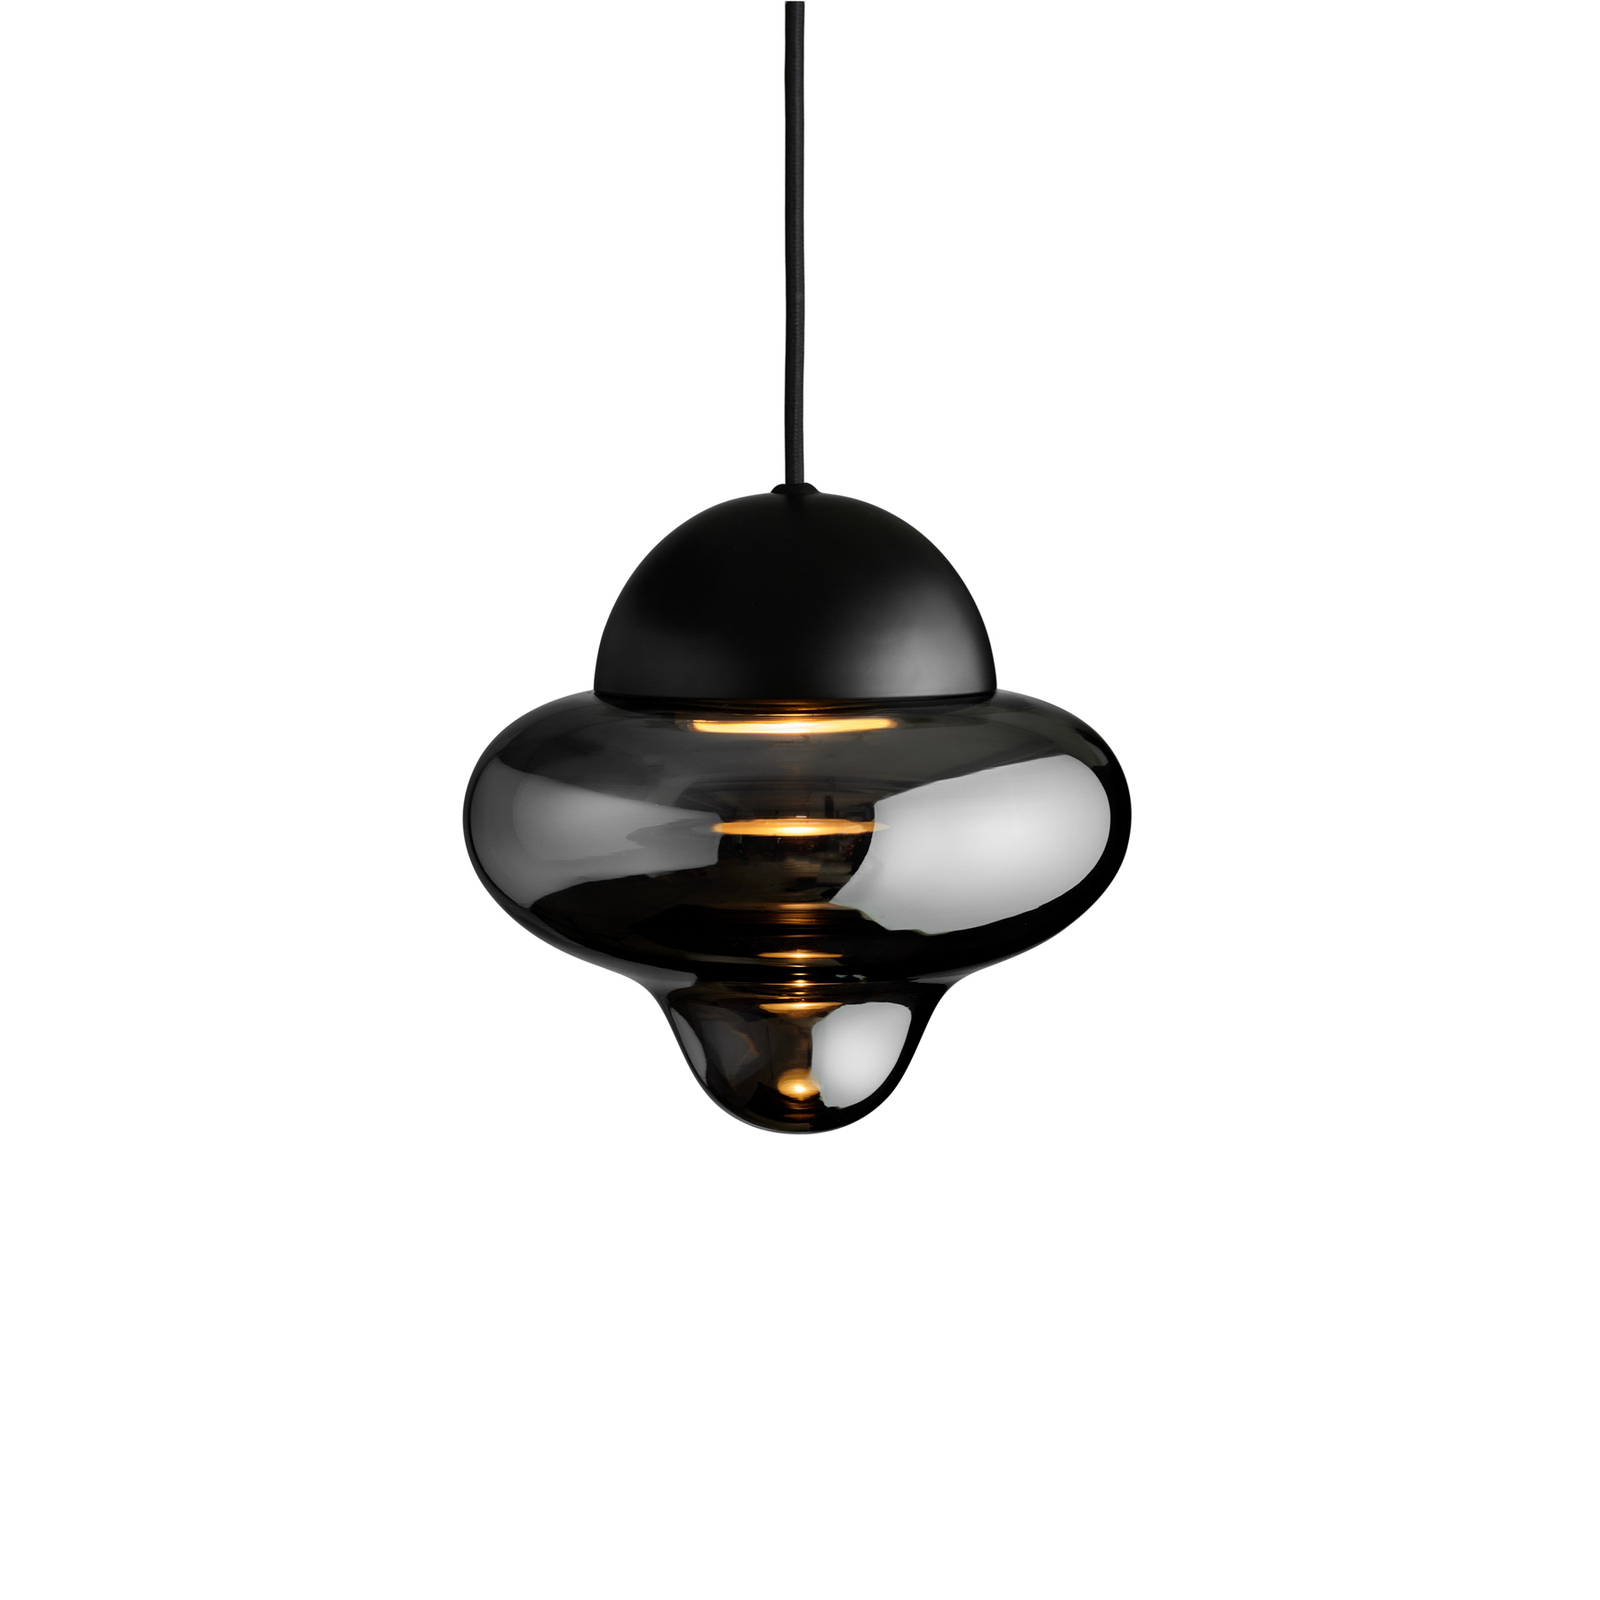 Nutty hanglamp, rookgrijs / zwart, Ø 18,5 cm, glas